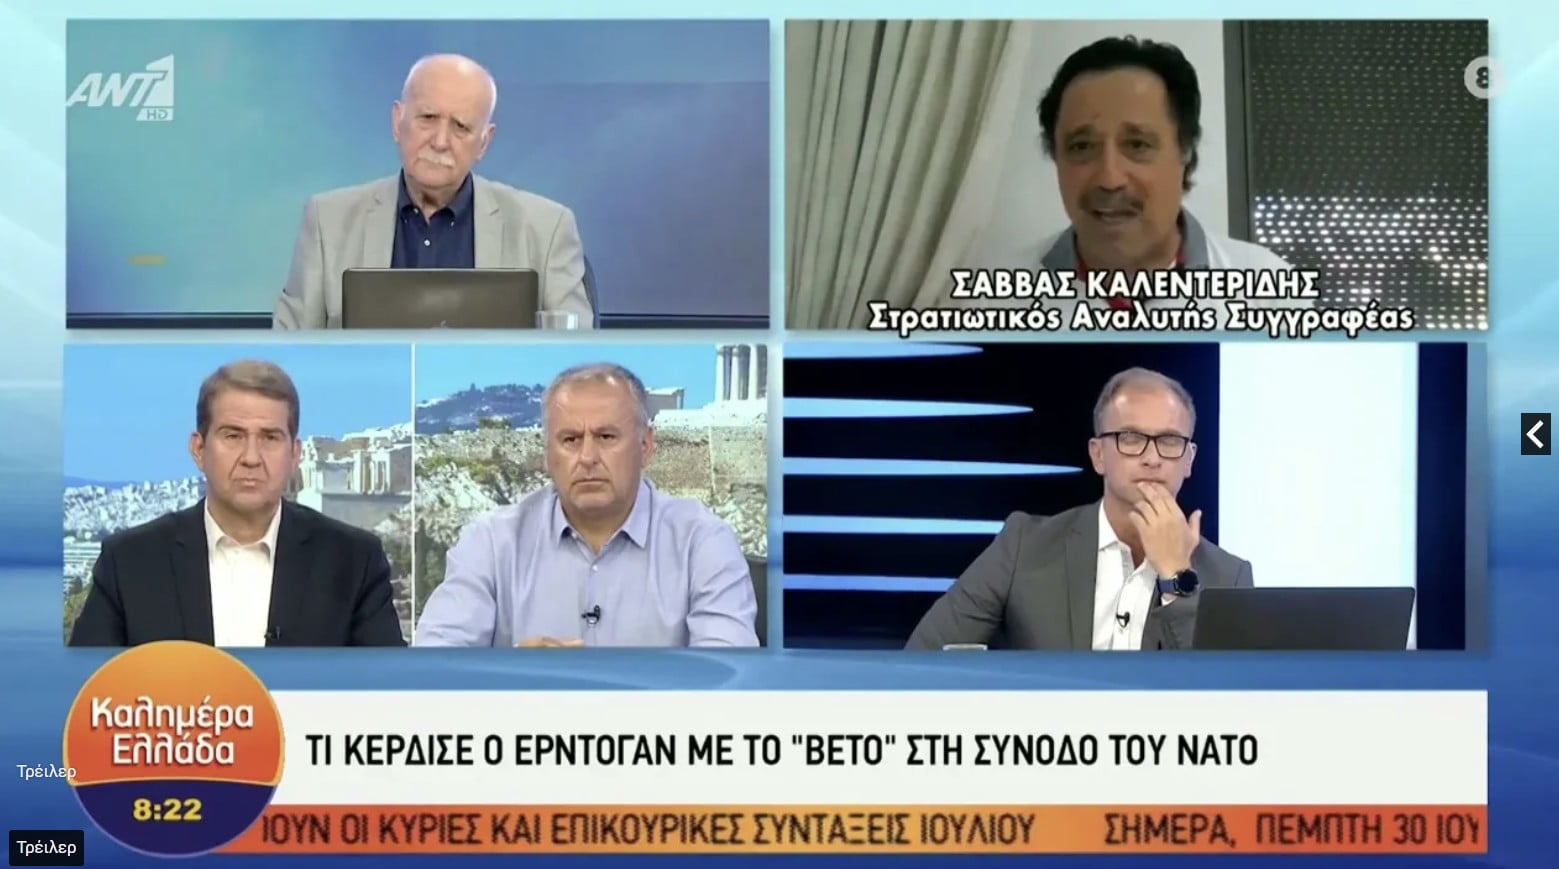 Σάββας Καλεντερίδης στον Παπαδάκη: Δεν μπορεί να μιλά για νίκη η Τουρκία! (ΒΙΝΤΕΟ)